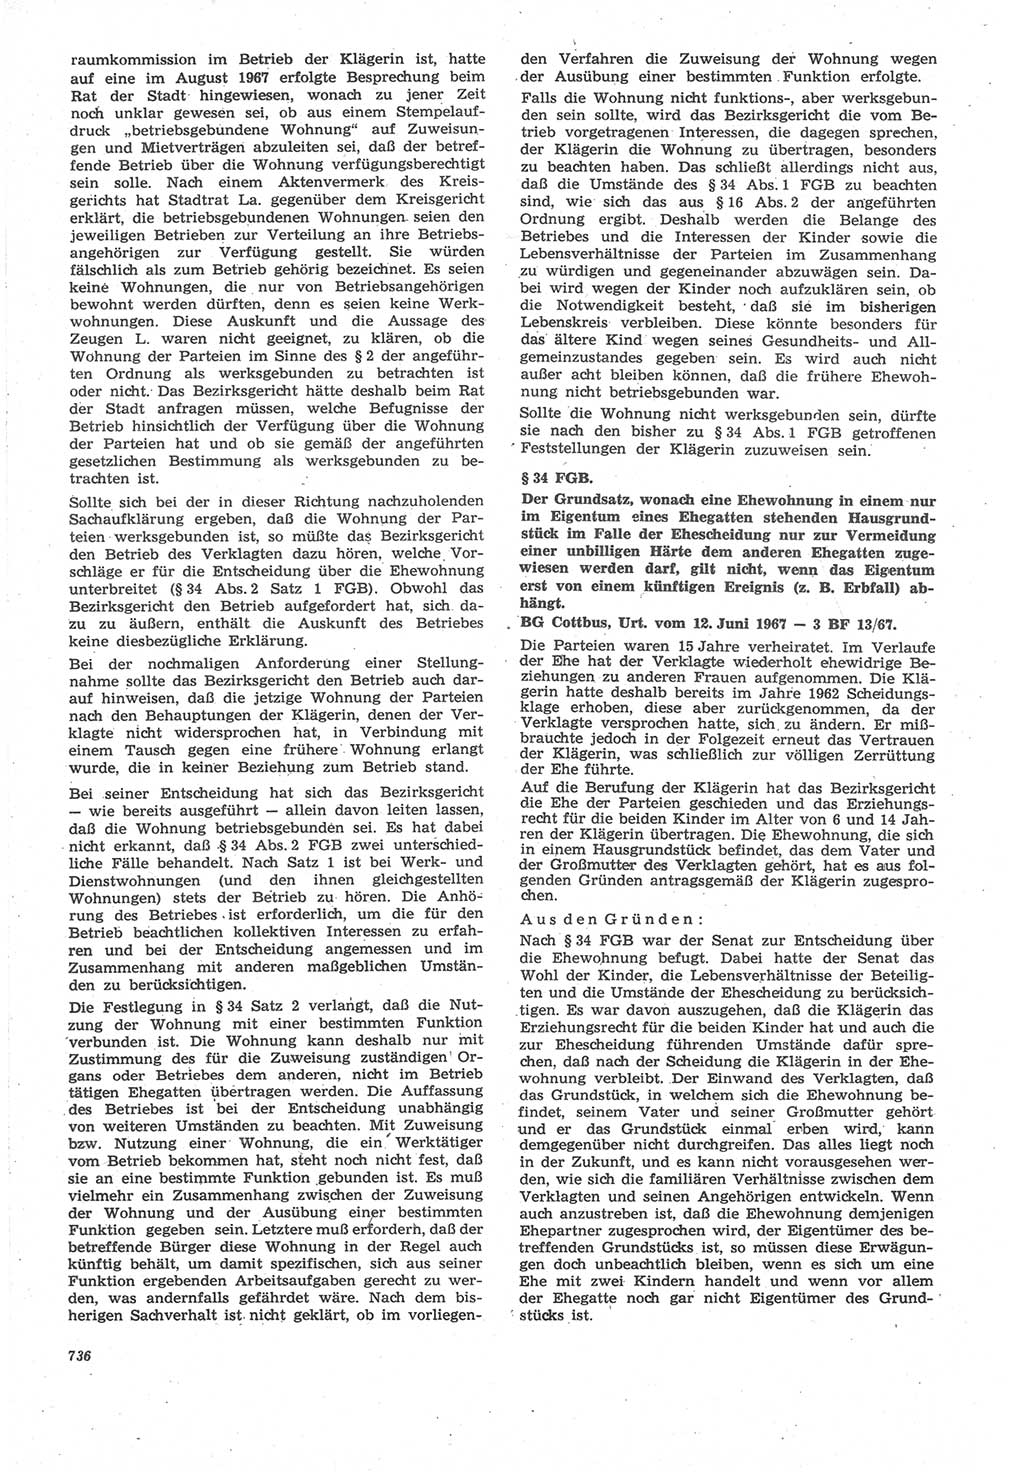 Neue Justiz (NJ), Zeitschrift für Recht und Rechtswissenschaft [Deutsche Demokratische Republik (DDR)], 22. Jahrgang 1968, Seite 736 (NJ DDR 1968, S. 736)